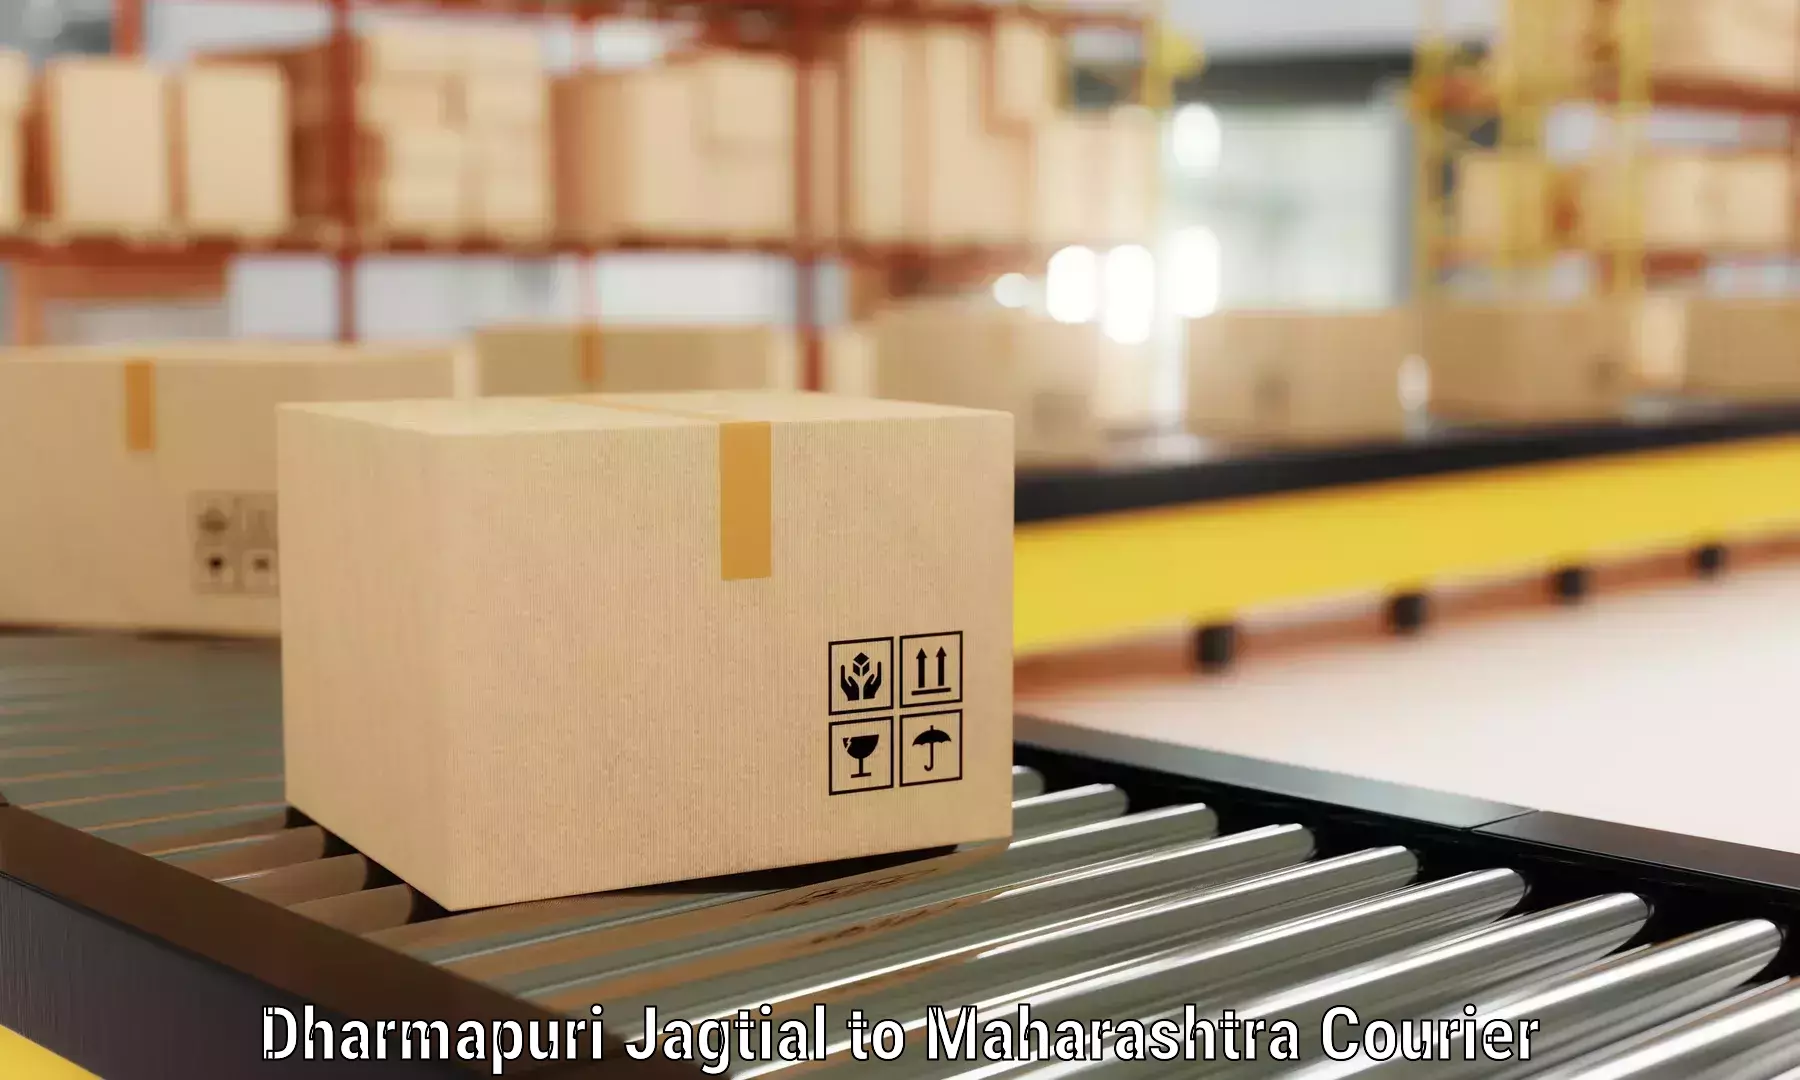 Furniture moving experts Dharmapuri Jagtial to Aheri